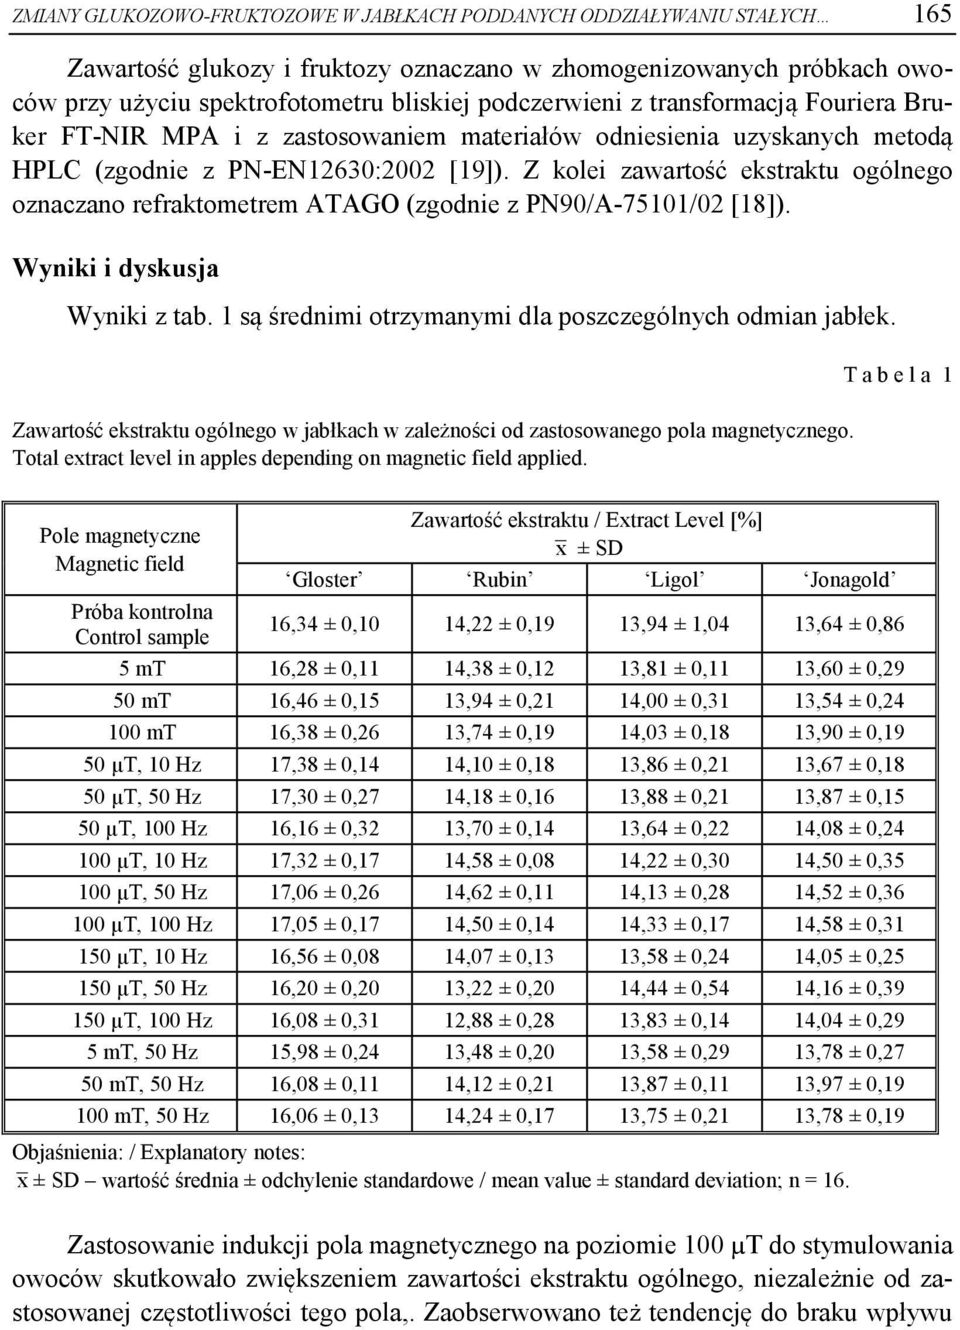 Z kolei zawartość ekstraktu ogólnego oznaczano refraktometrem ATAGO (zgodnie z PN90/A-75101/02 [18]). Wyniki i dyskusja Wyniki z tab. 1 są średnimi otrzymanymi dla poszczególnych odmian jabłek.